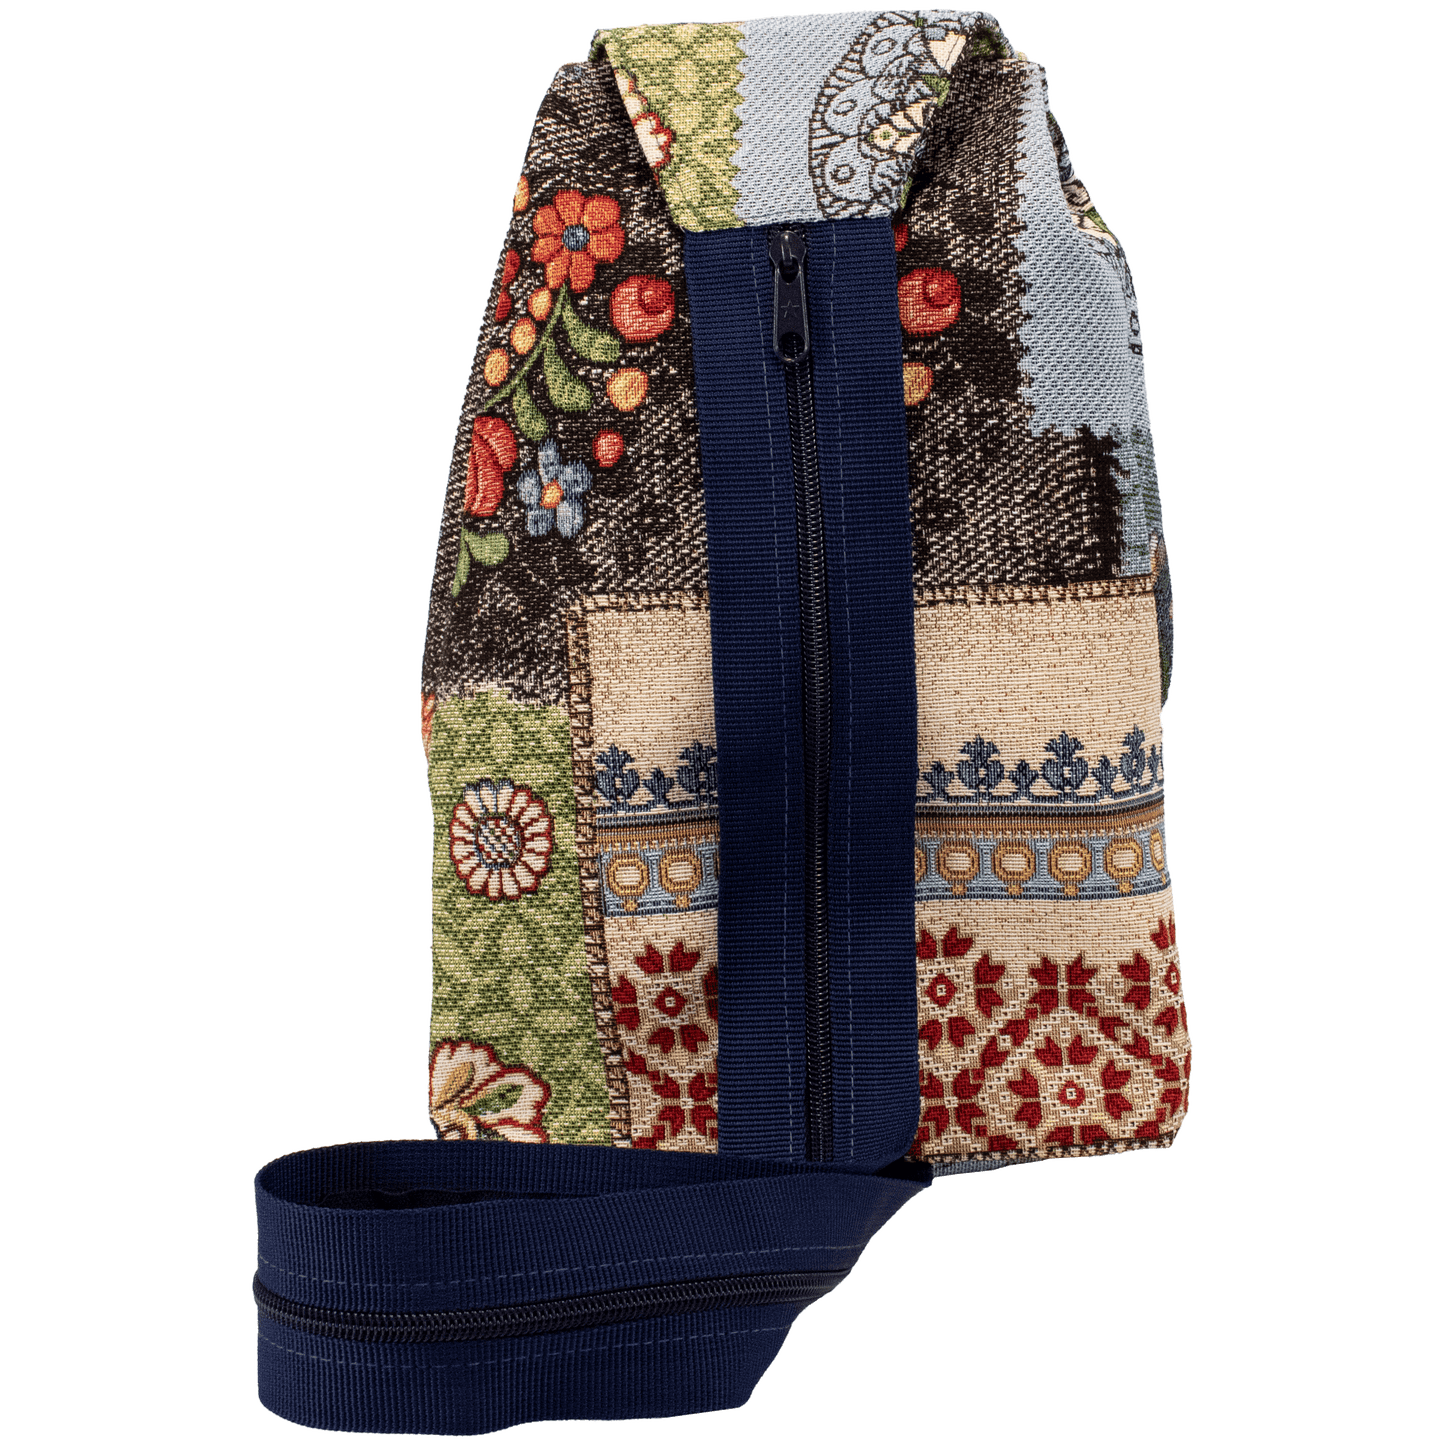 Rania Backpack/Shoulder Bag - Large (Various Patterns)